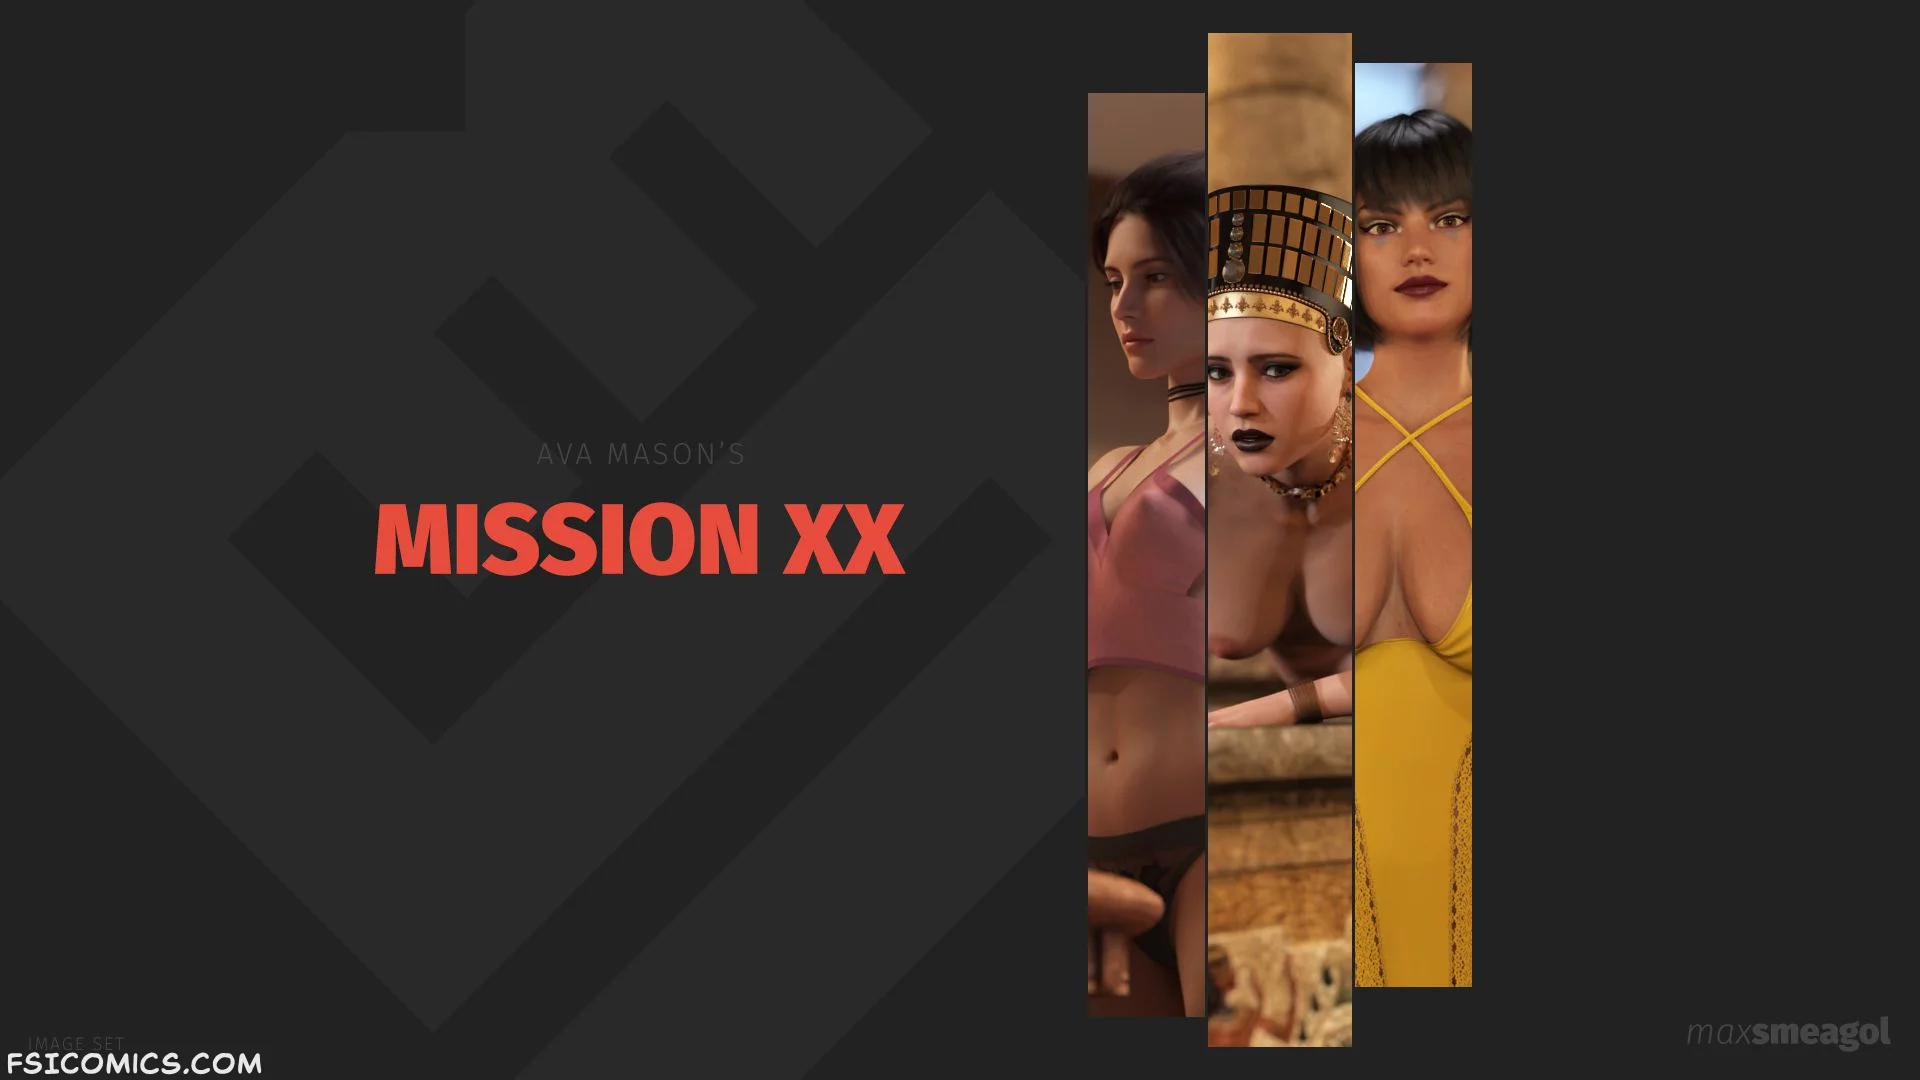 Ava Mason Mission XX - MaxSmeagol - 43 - FSIComics